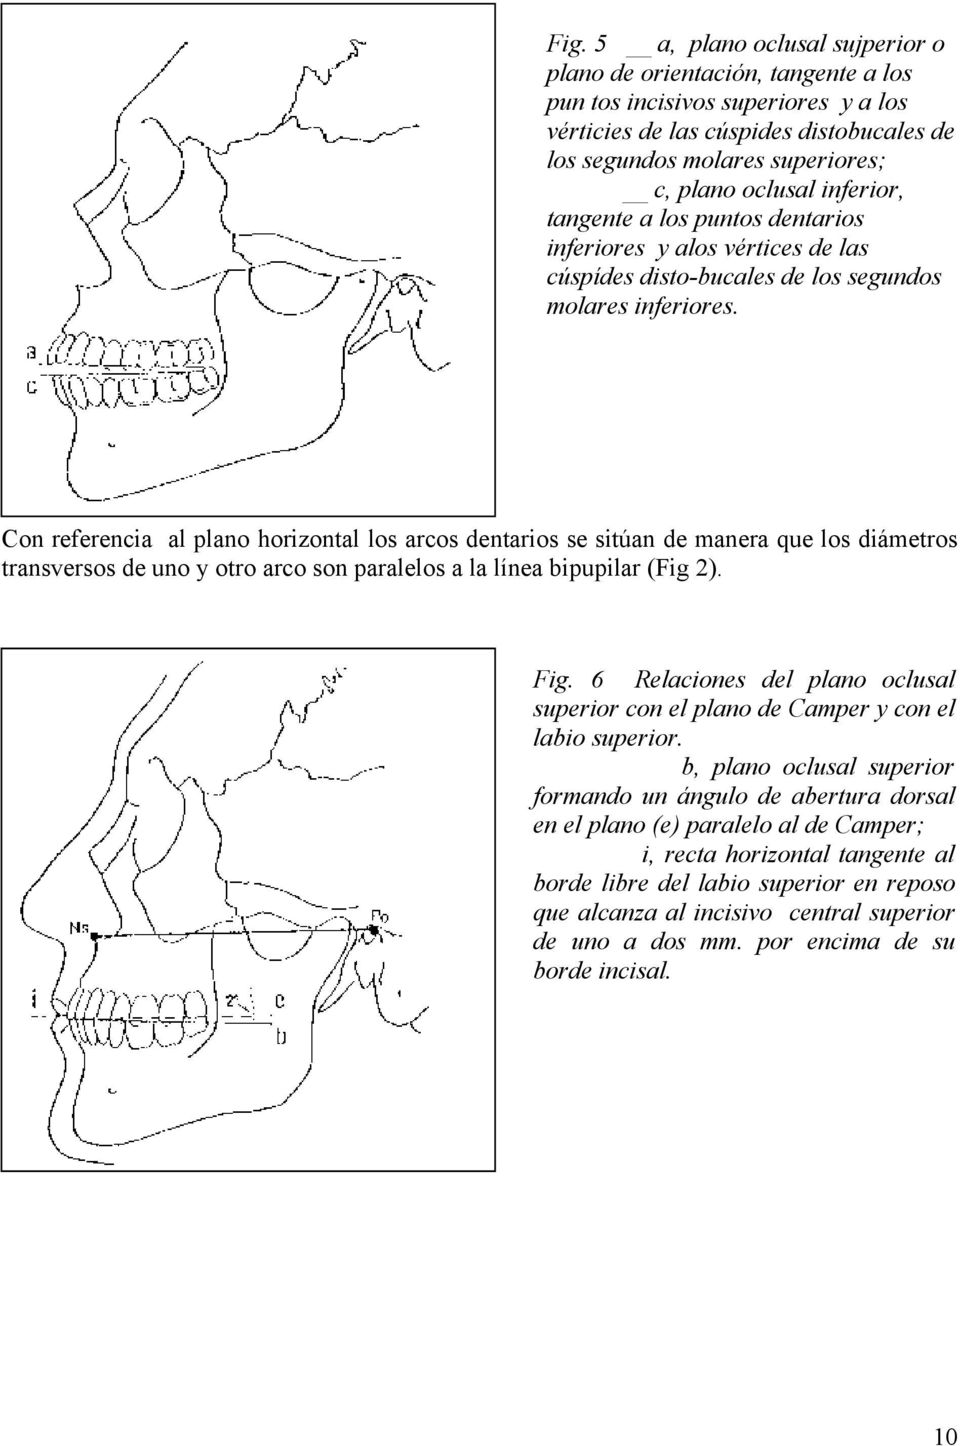 Con referencia al plano horizontal los arcos dentarios se sitúan de manera que los diámetros transversos de uno y otro arco son paralelos a la línea bipupilar (Fig 2). Fig.